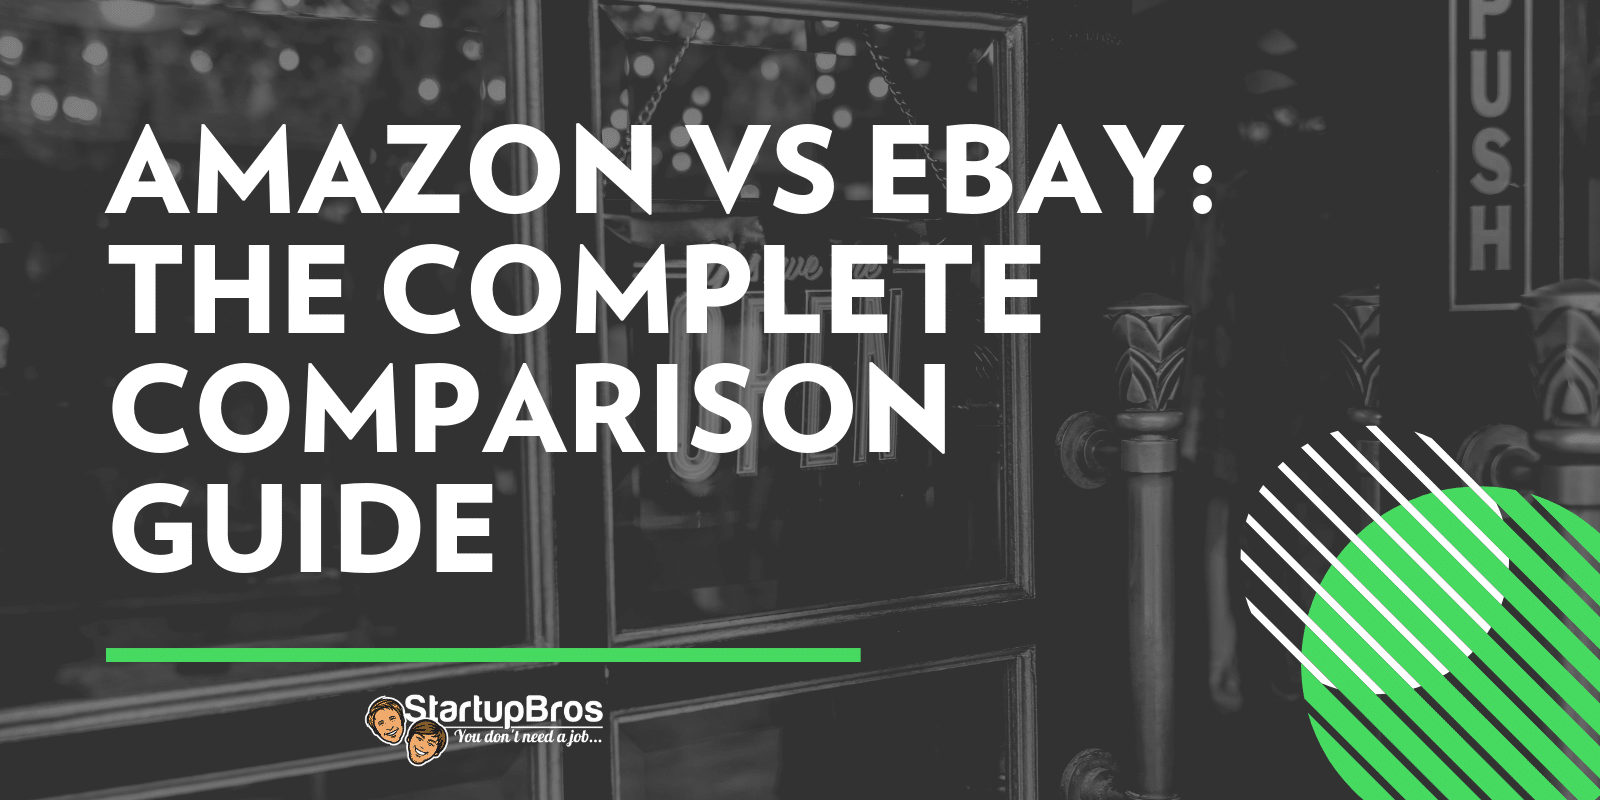 Amazon vs eBay The Complete Comparison Guide